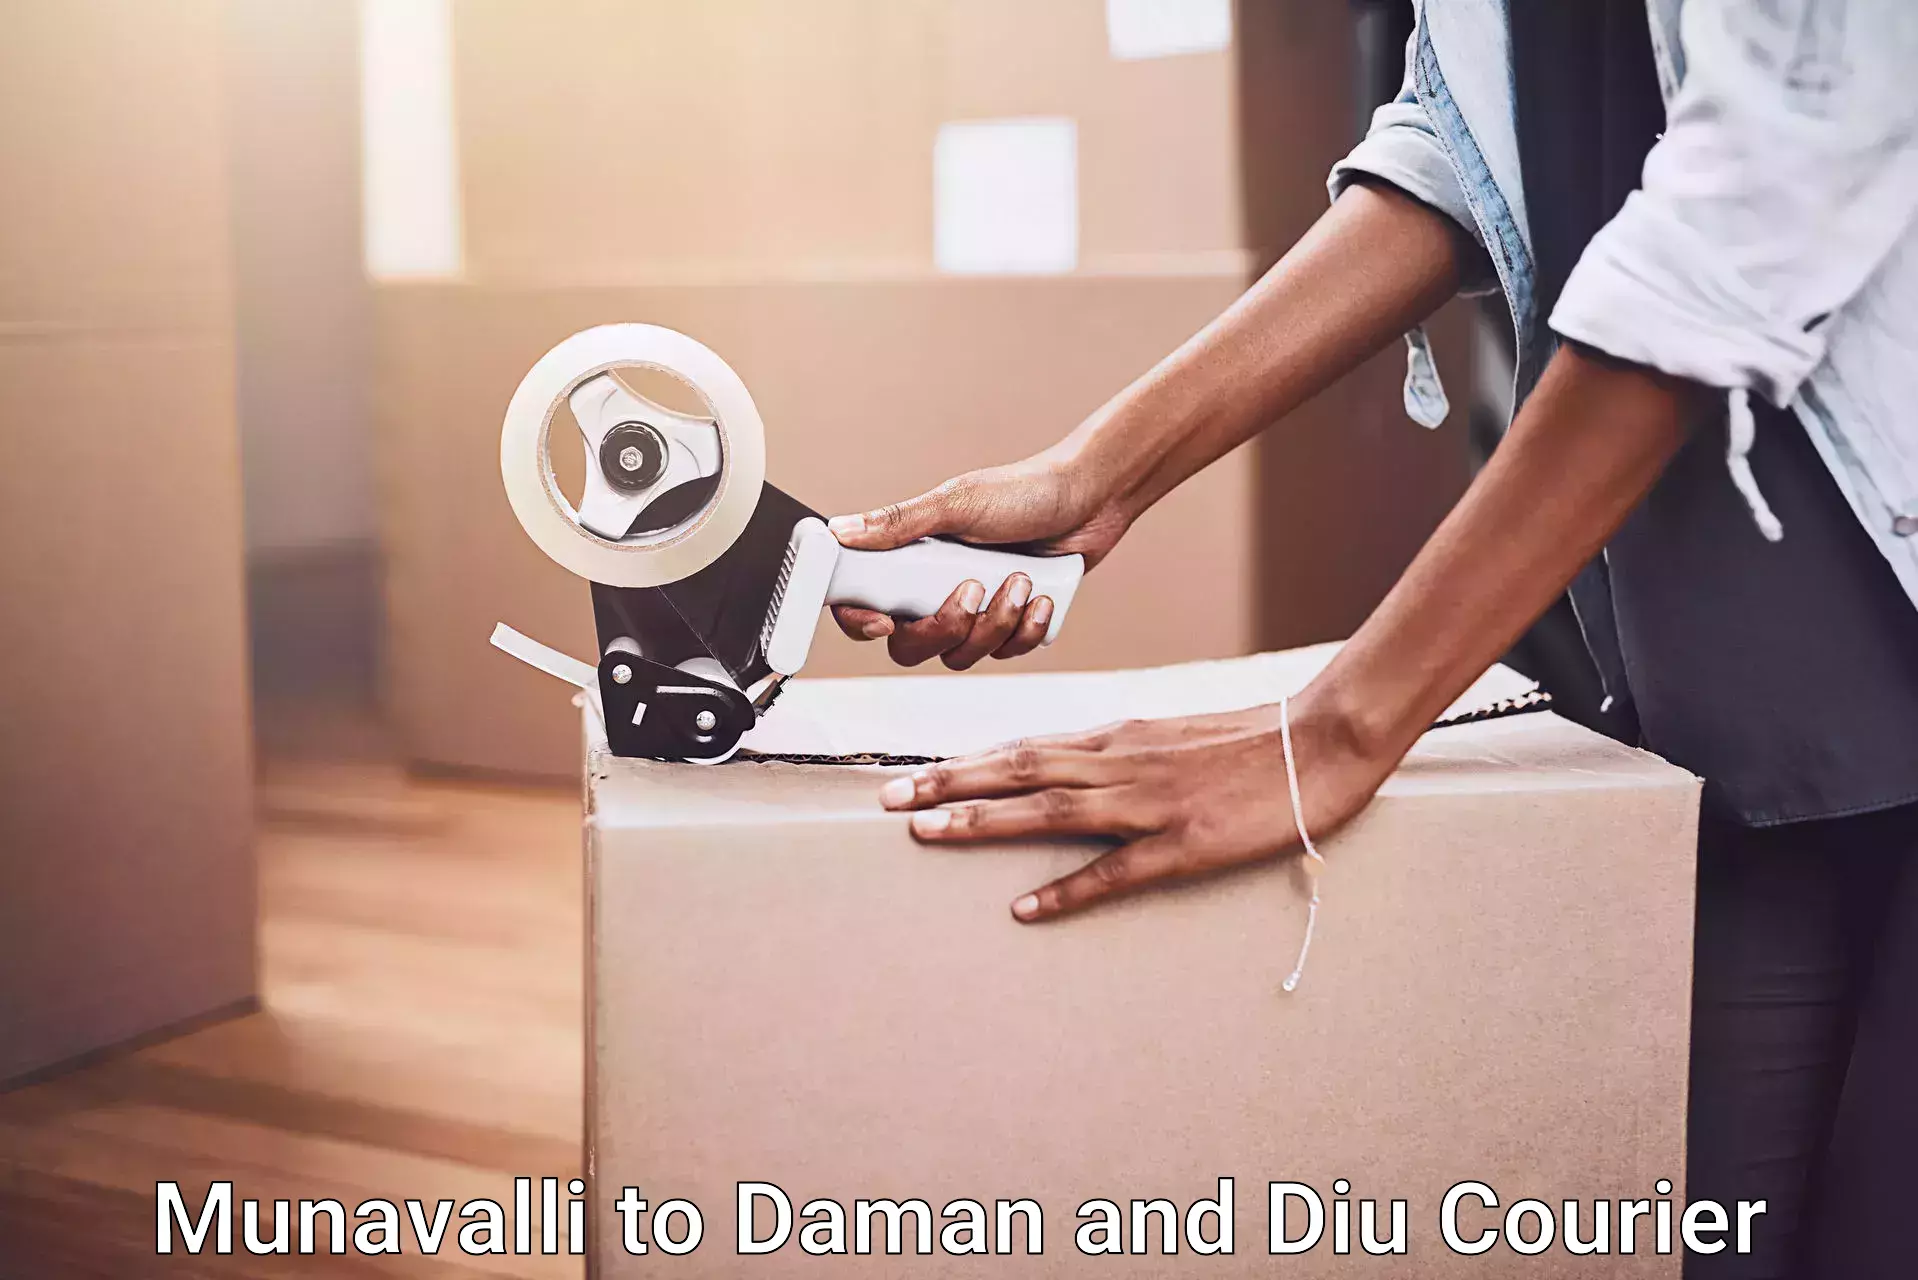 Stress-free moving Munavalli to Daman and Diu